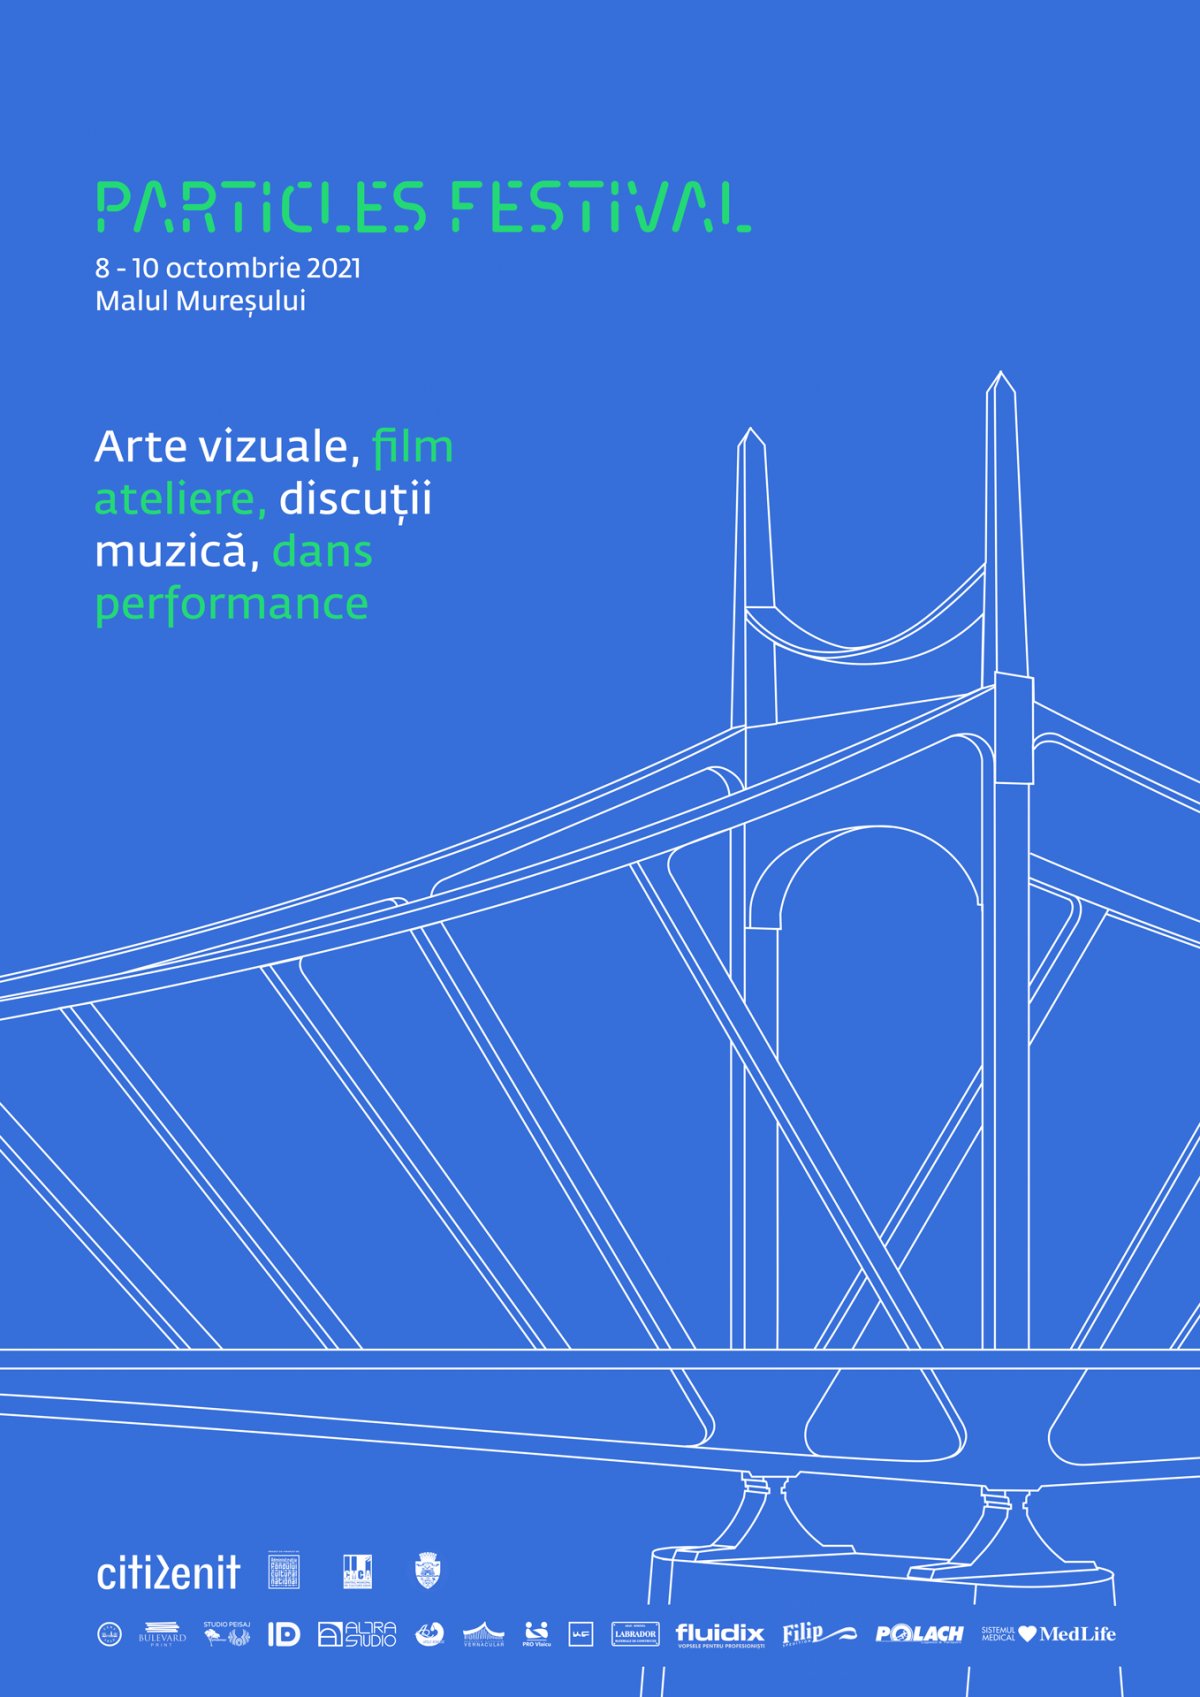 Program Particles Festival ediția a 4-a Între 8-10 octombrie arădenii sunt invitați la 3 zile de evenimente artistice pe Malul Mureșului